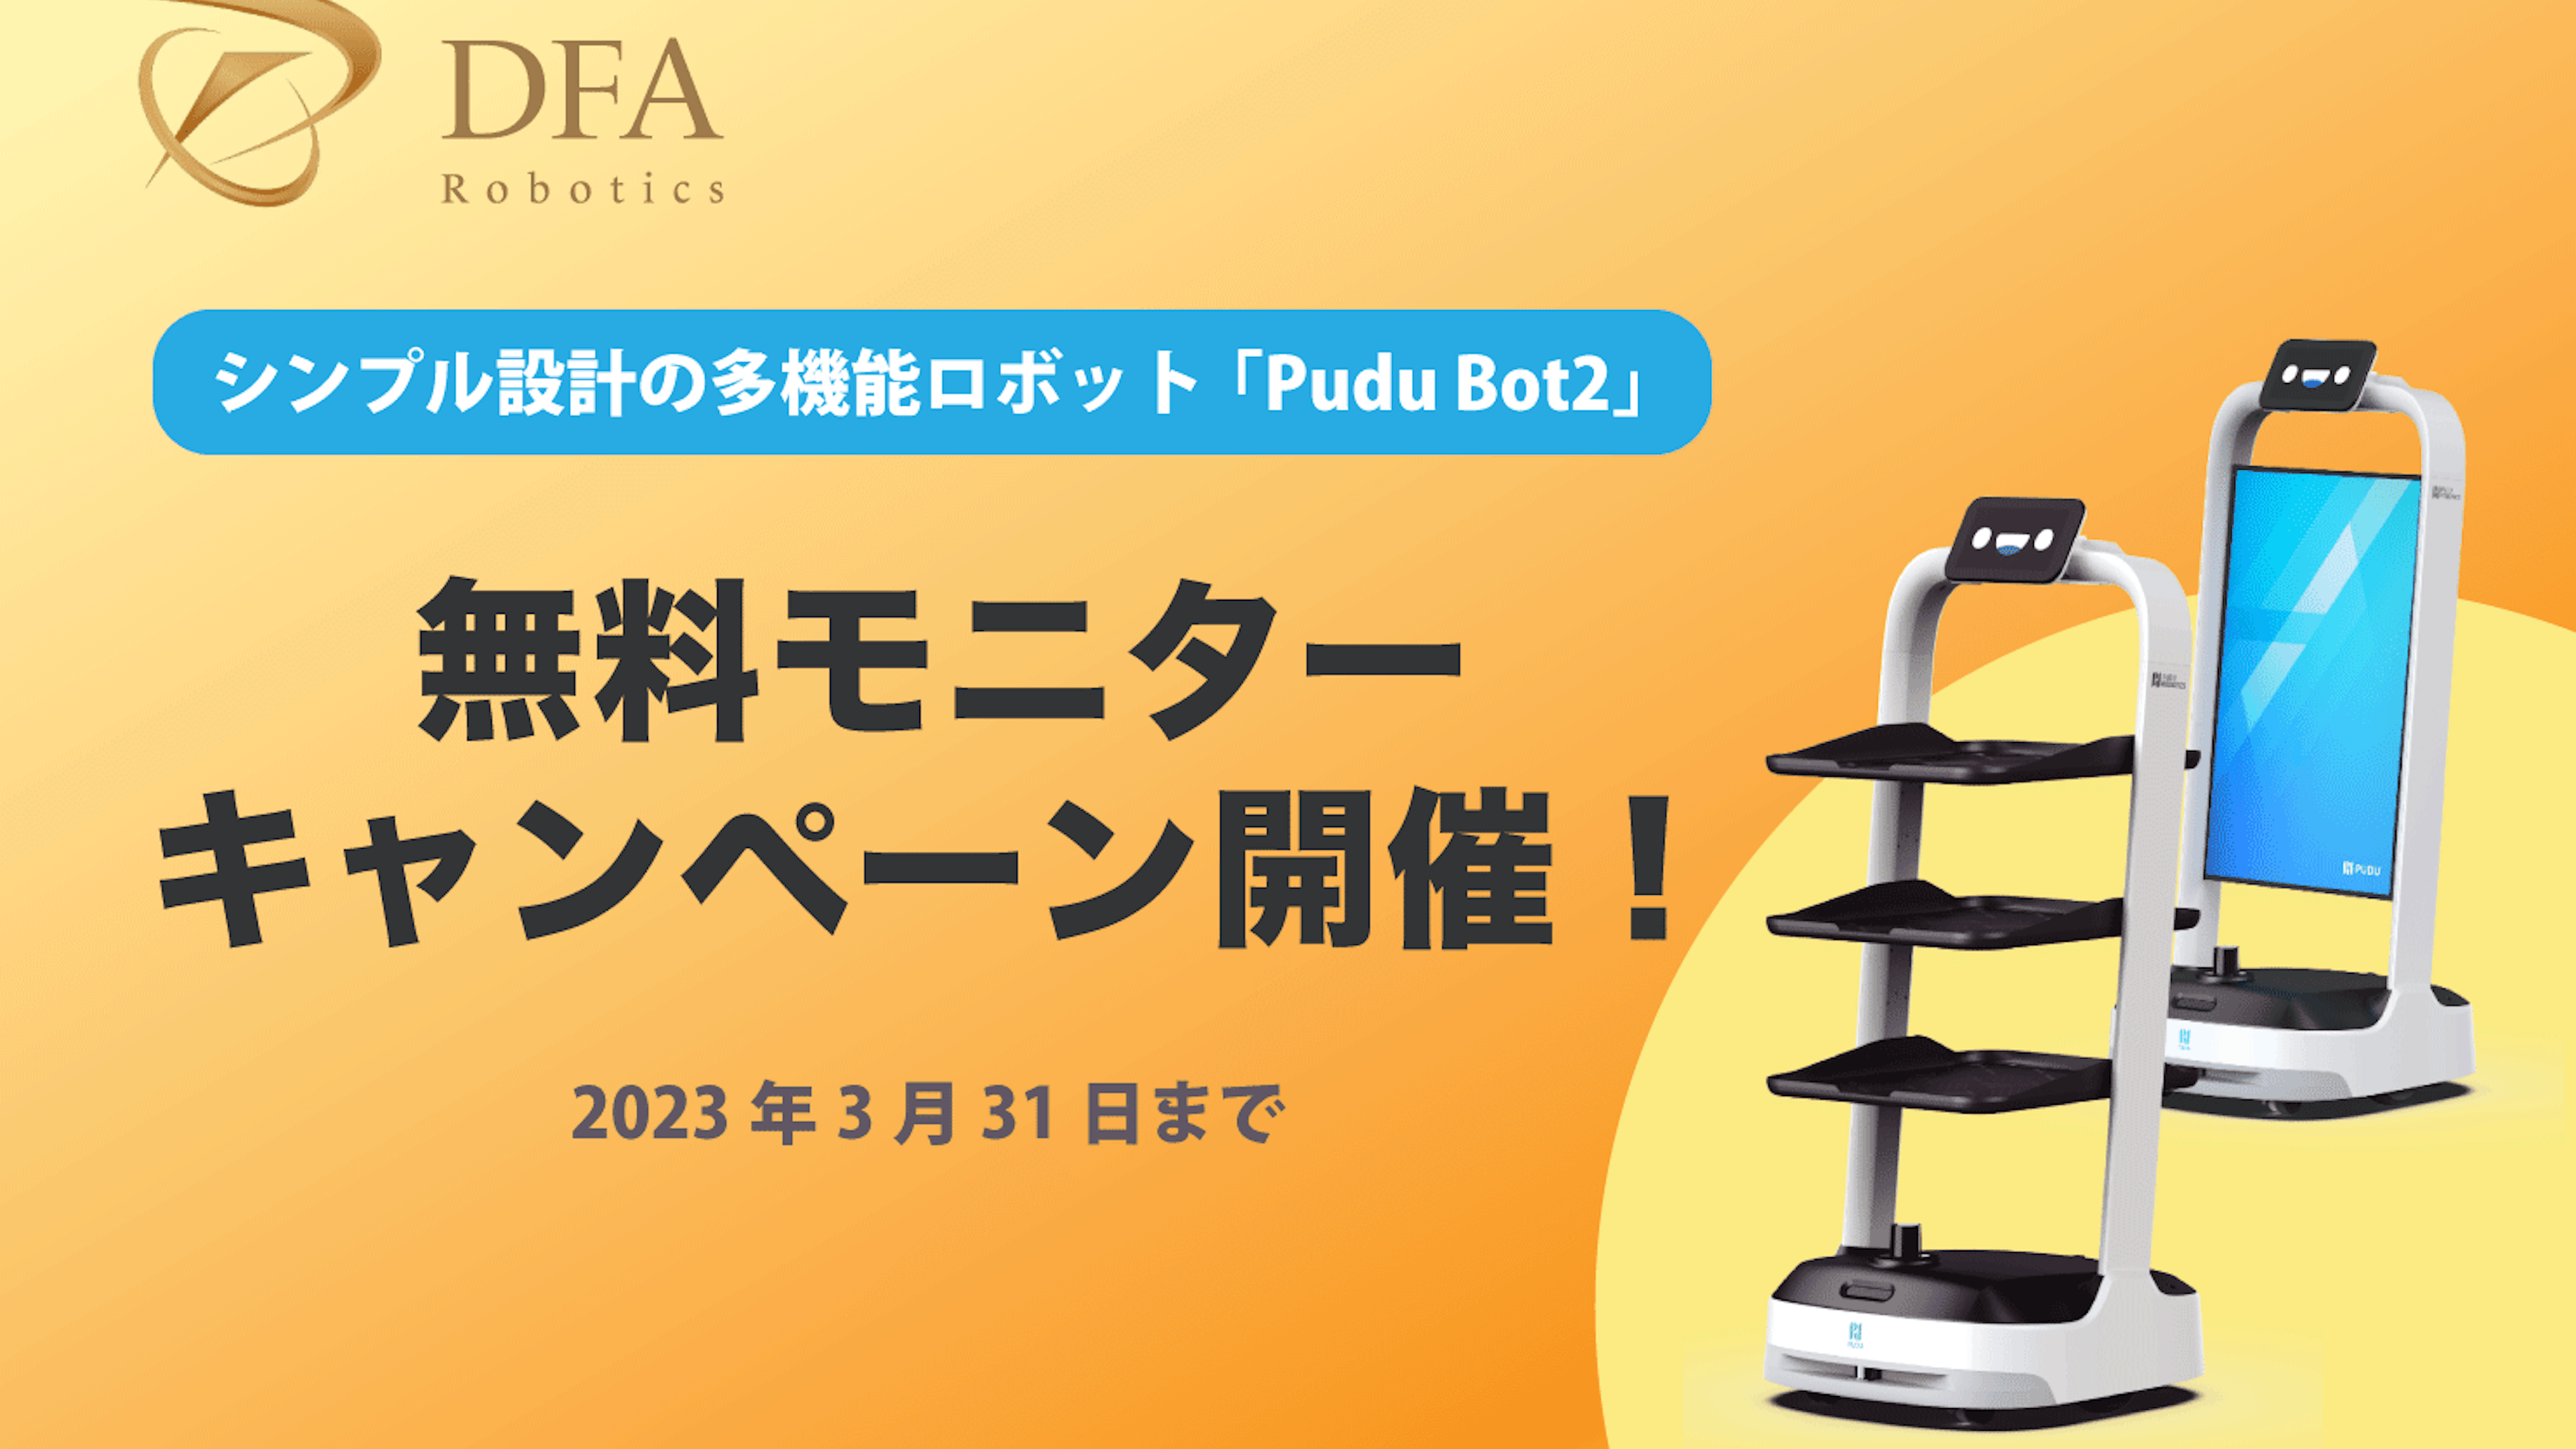 シンプル設計の多機能ロボット「Pudu Bot２（プードゥーボットツー）」の取り扱いがスタート、テスト導入の無料モニターキャンペーン開催のキービジュアル